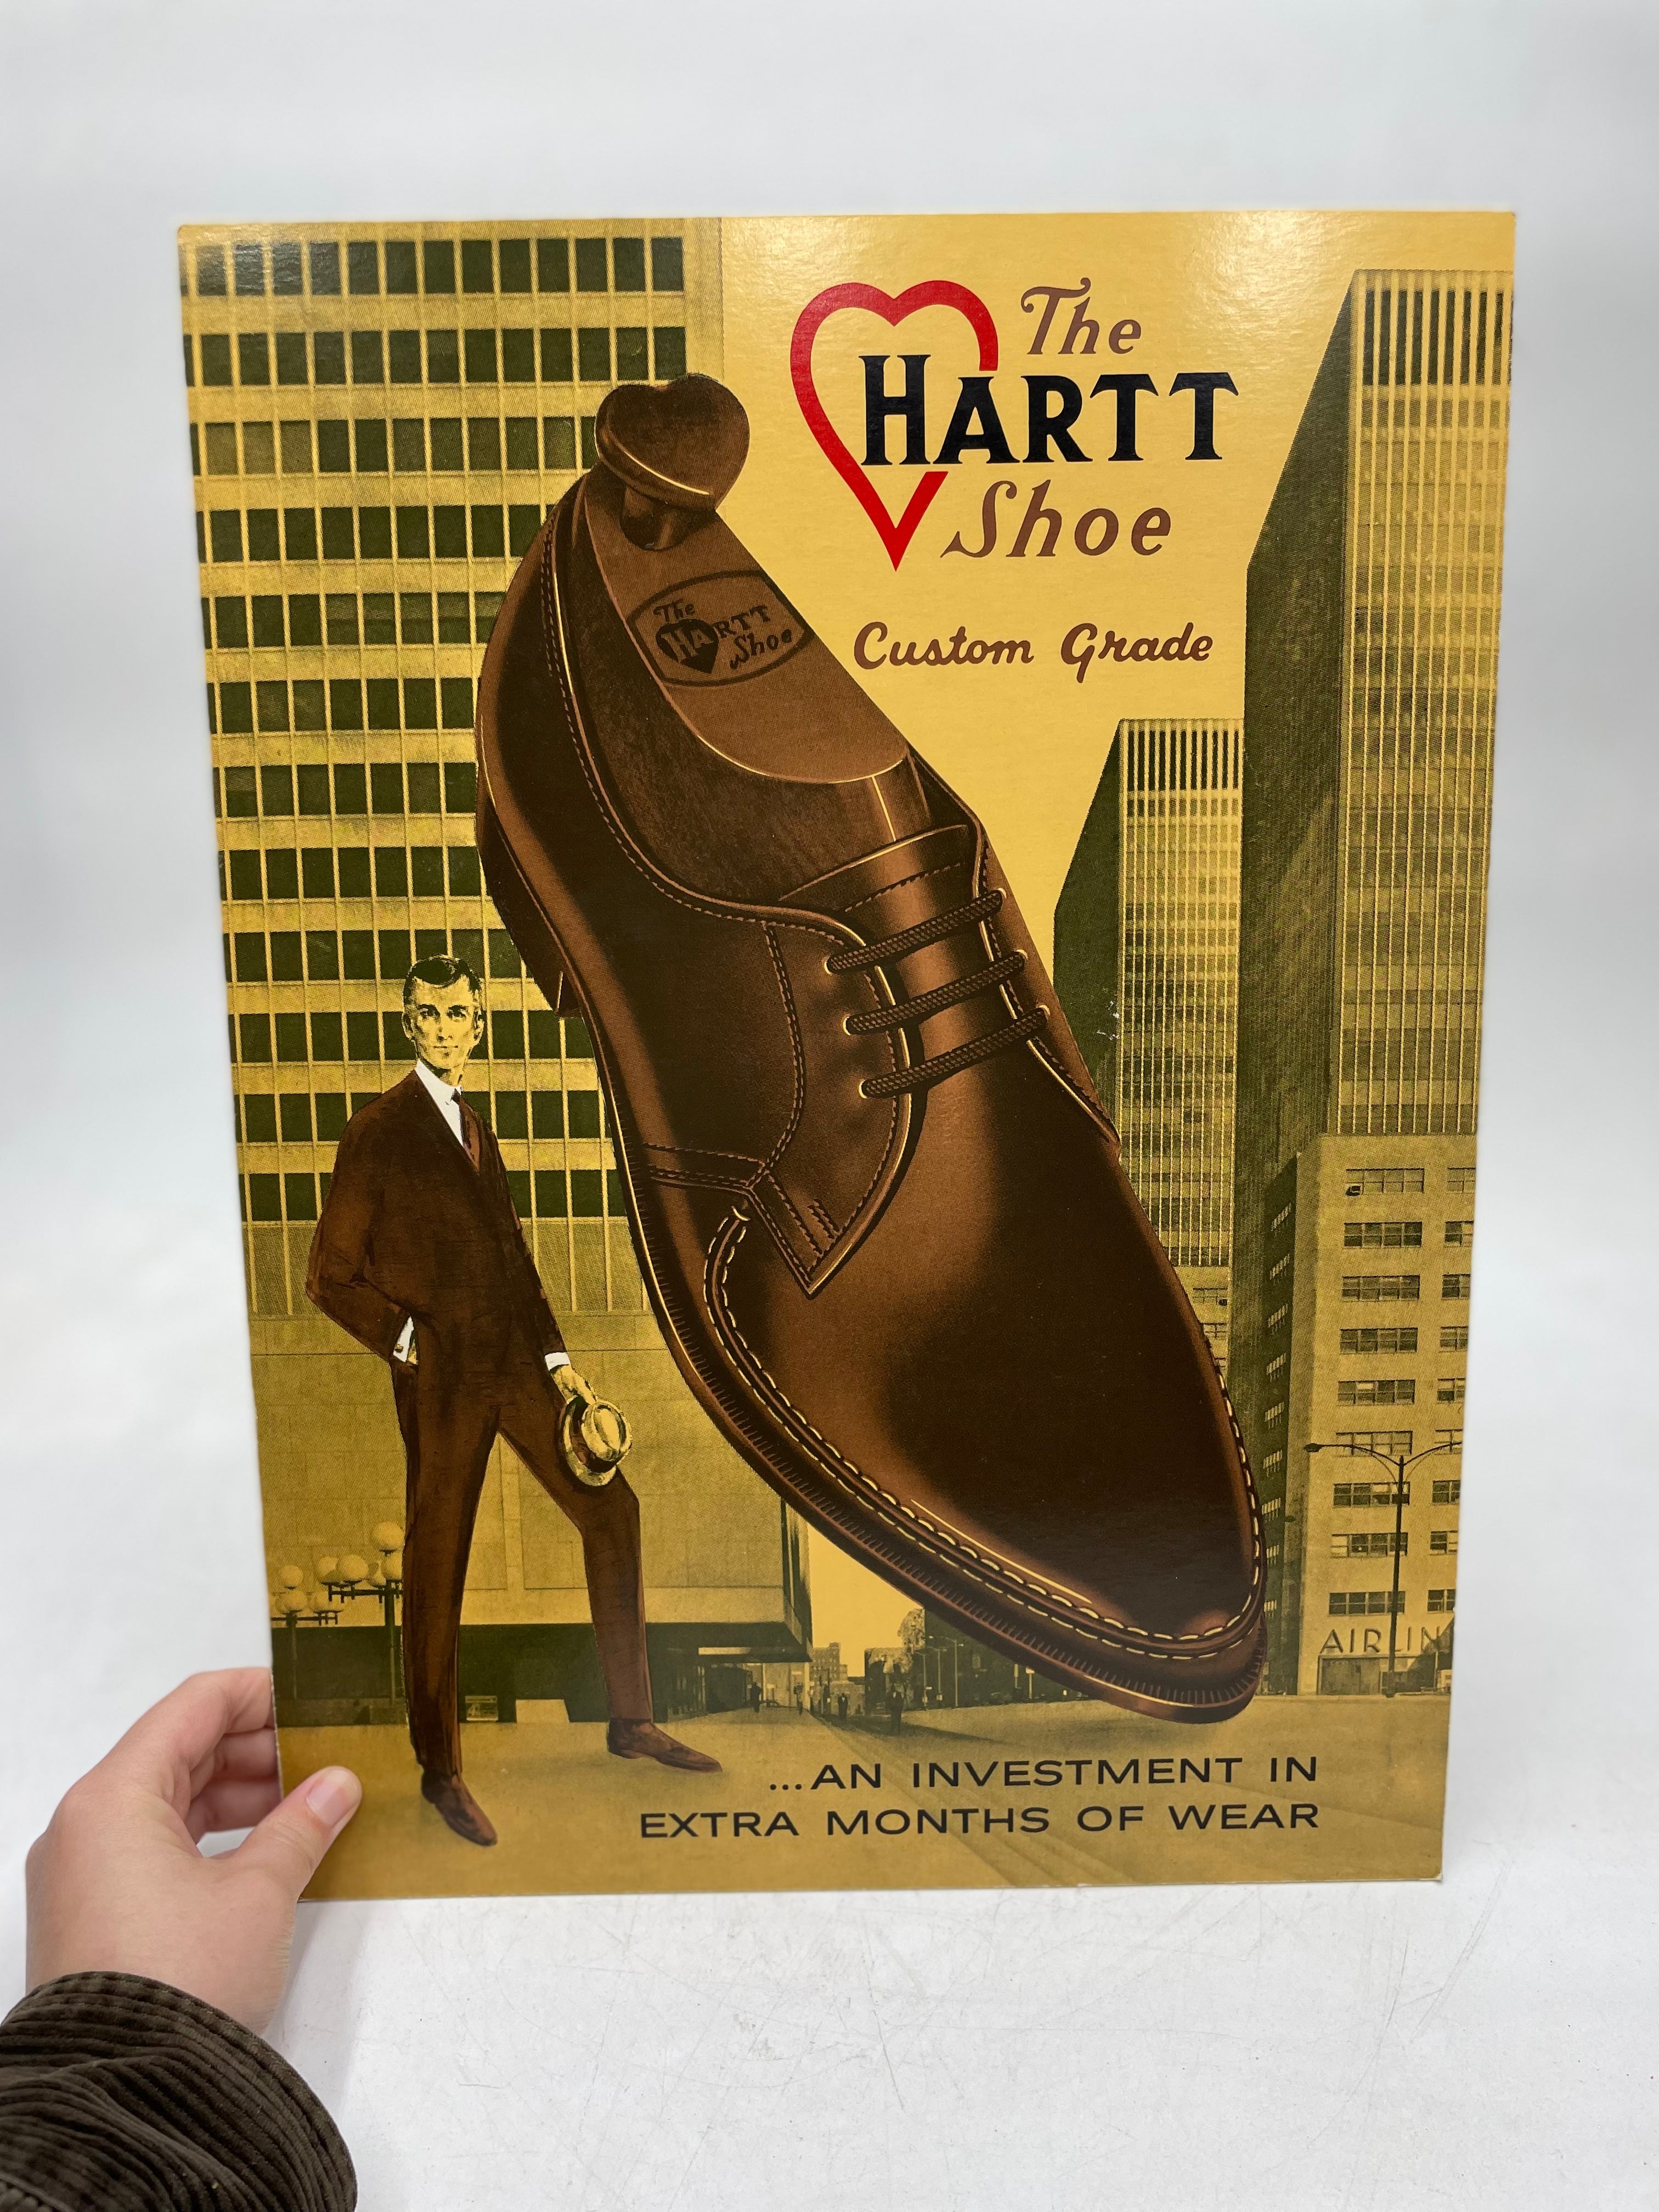 Croquis publicitaire original "The Hartt Shoe" par l'artiste S. Reiter